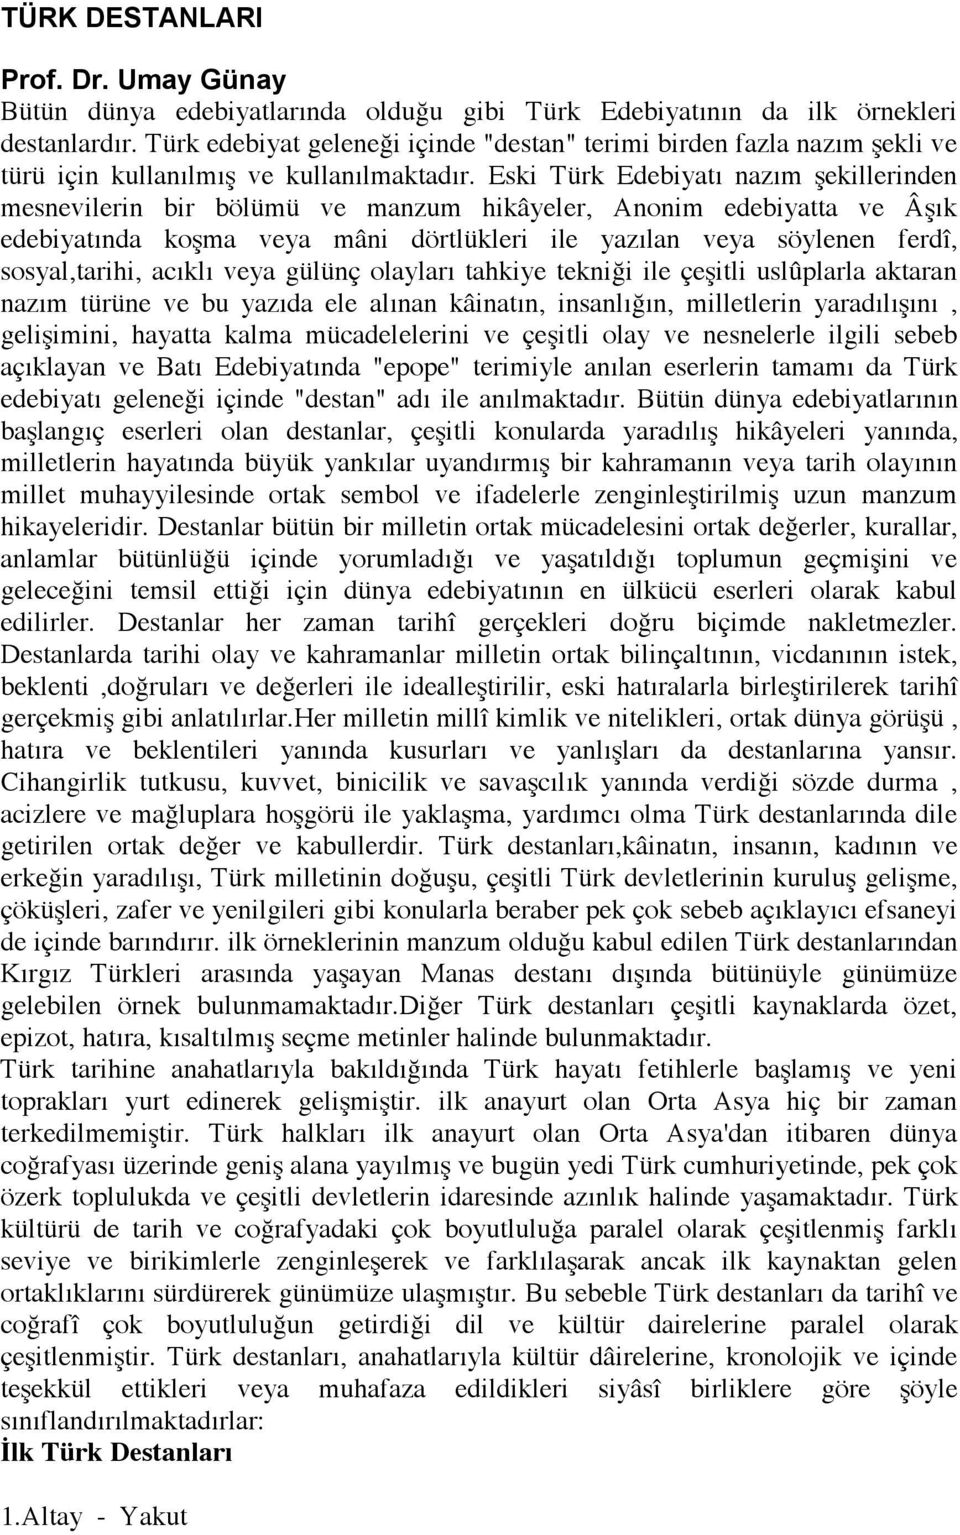 Eski Türk Edebiyatı nazım şekillerinden mesnevilerin bir bölümü ve manzum hikâyeler, Anonim edebiyatta ve Âşık edebiyatında koşma veya mâni dörtlükleri ile yazılan veya söylenen ferdî, sosyal,tarihi,